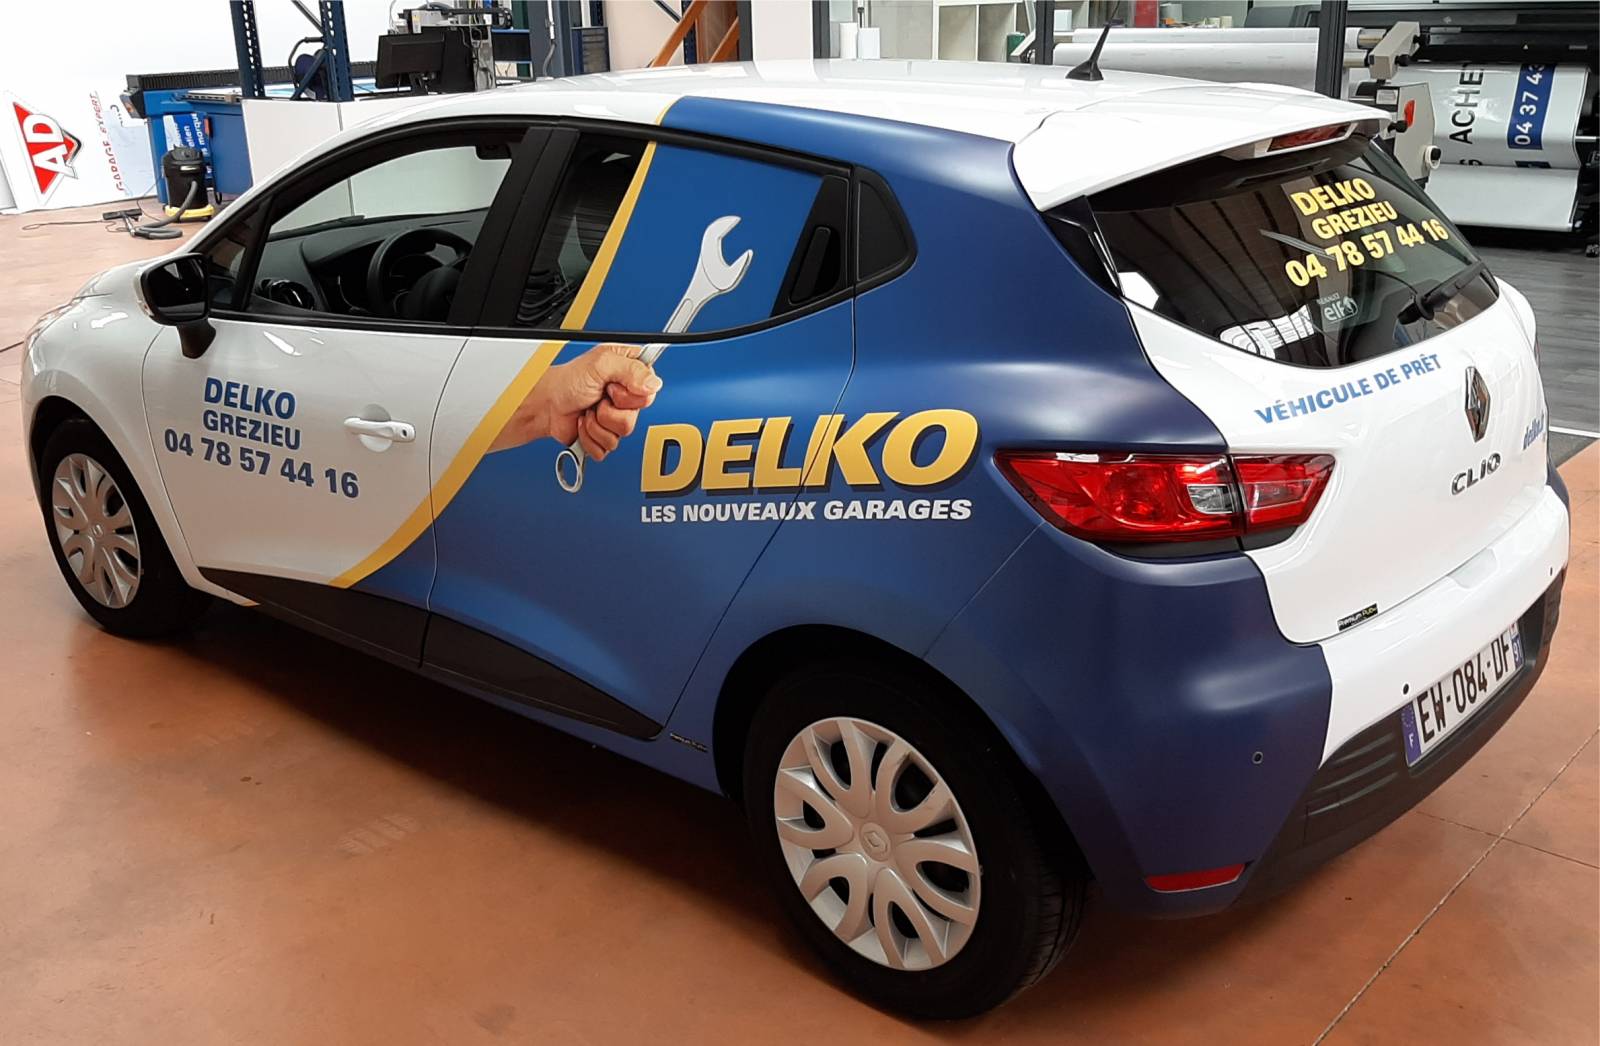 Flocage autocollants et sticker sur voiture entreprise DELKO à Villefranche sur Saône